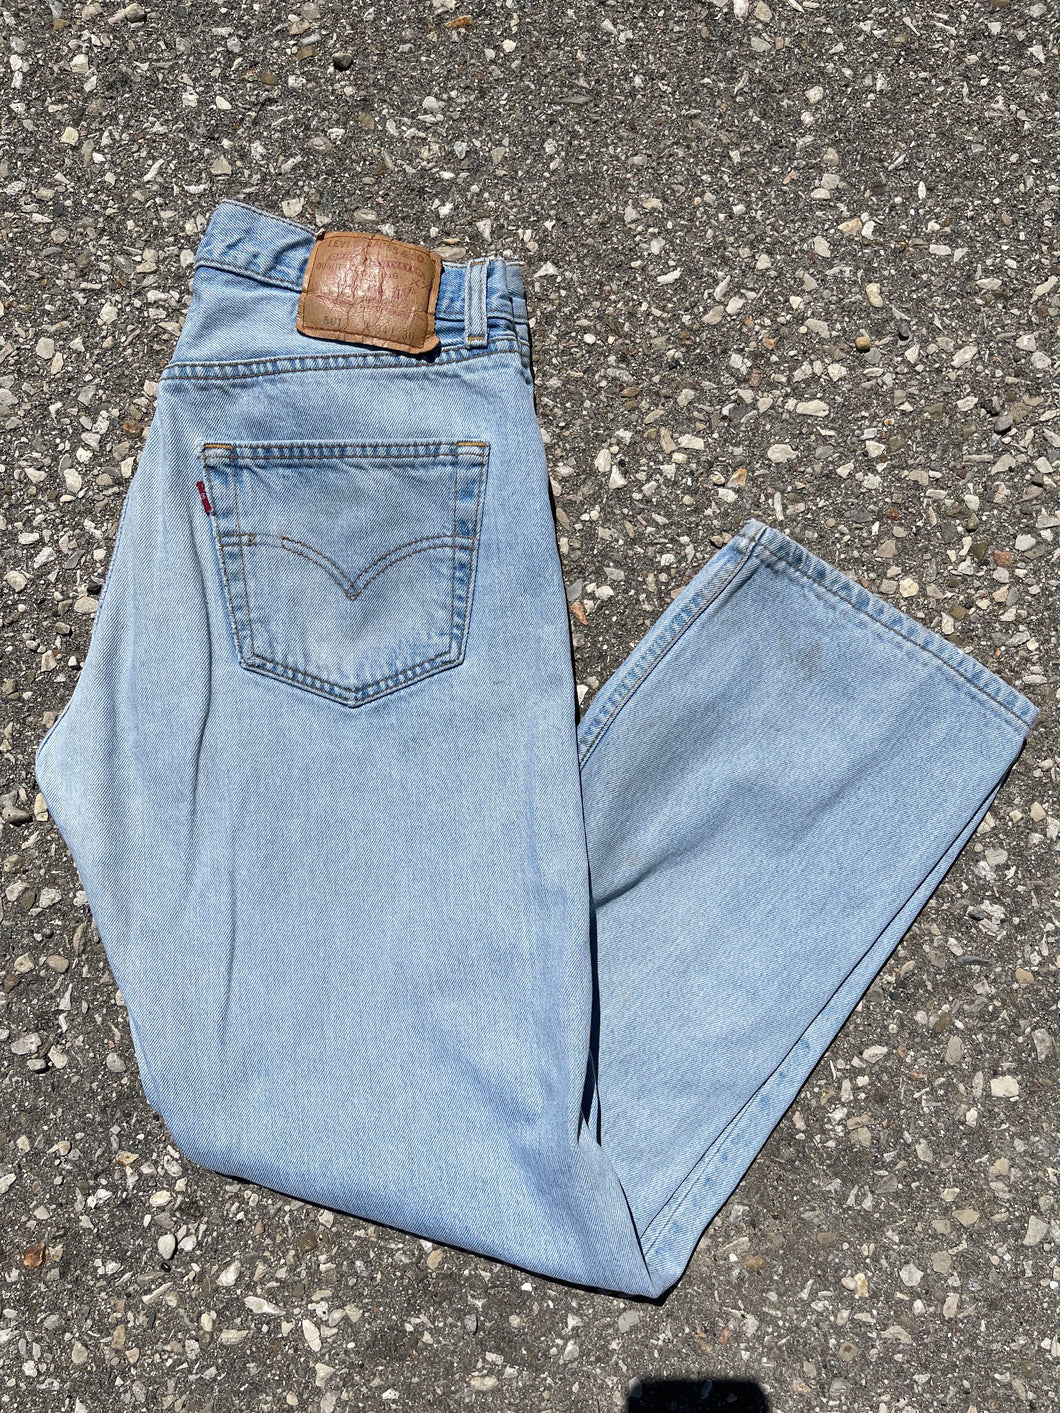 Levis 501 Jeans - Waist 32